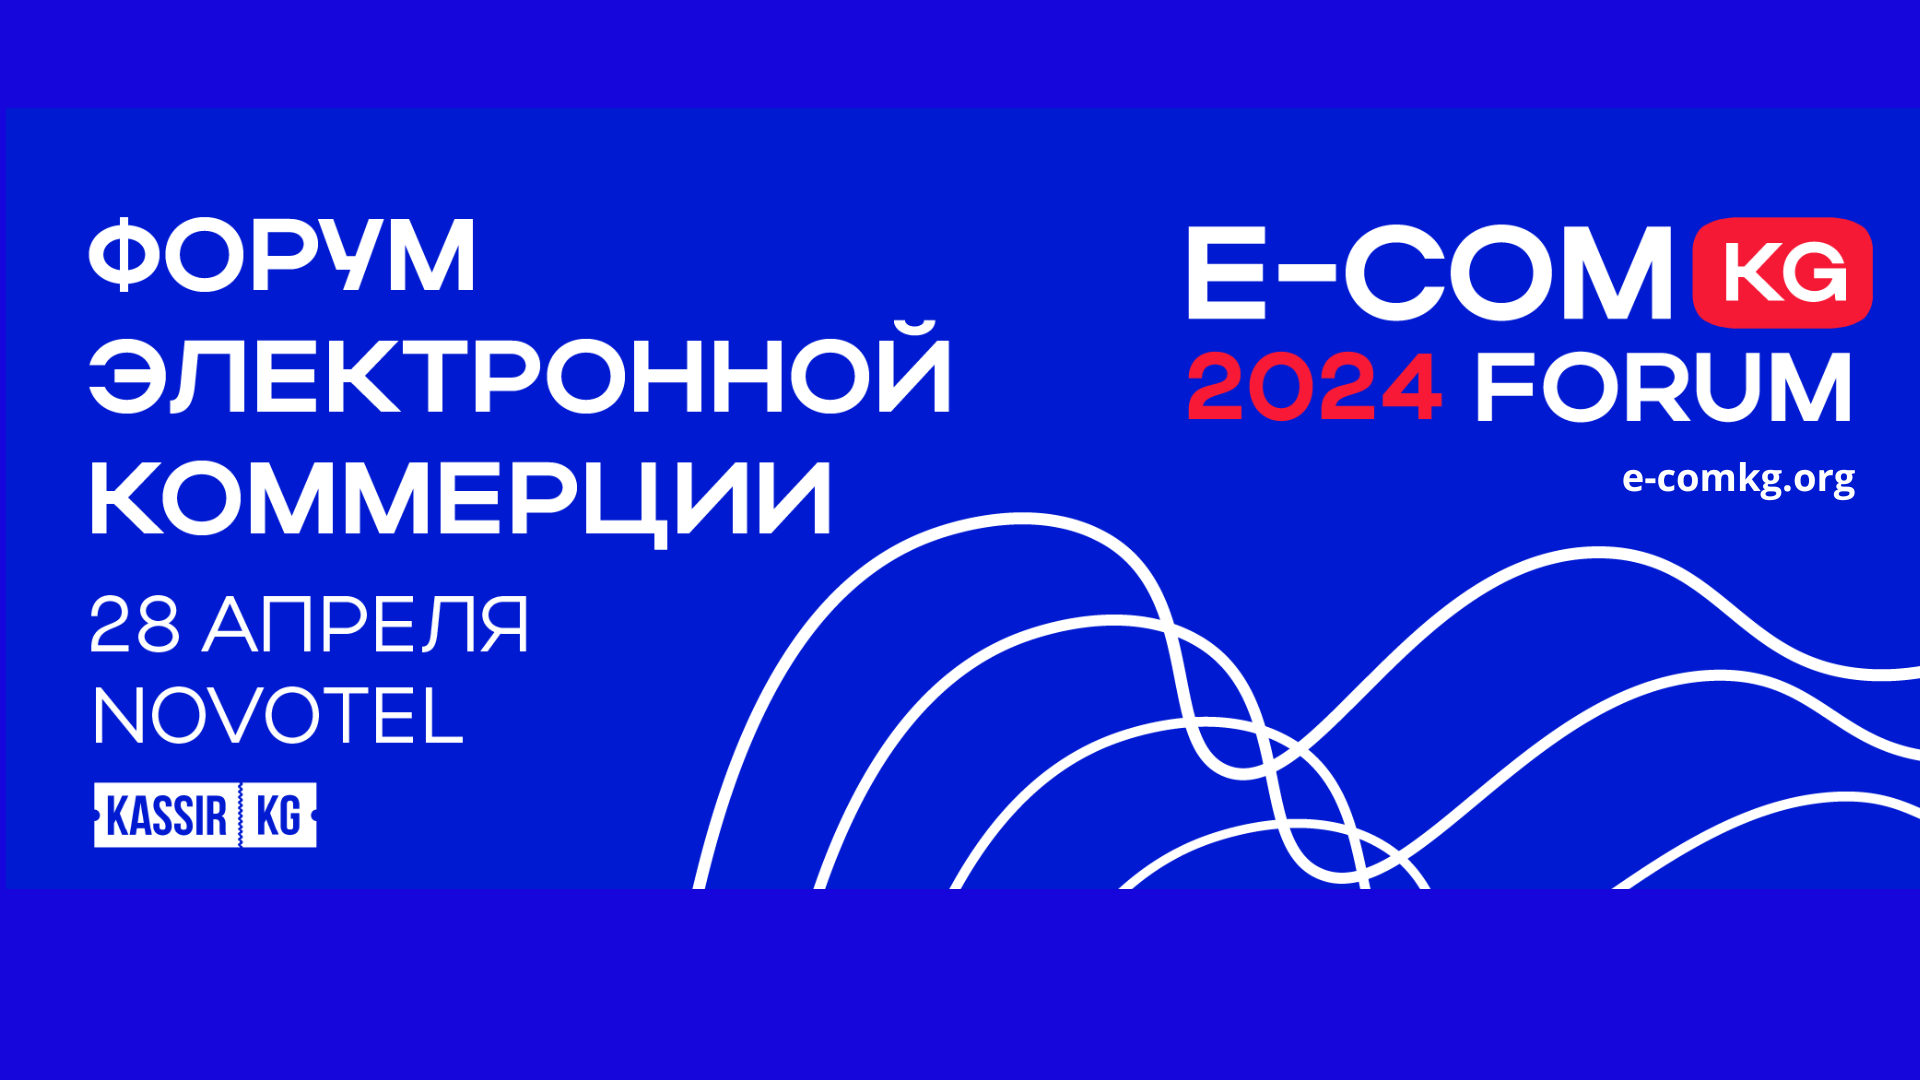 В Бишкеке пройдет форум E-COMKG-24 по трендам, инсайдам и новым возможностям на маркетплейсах